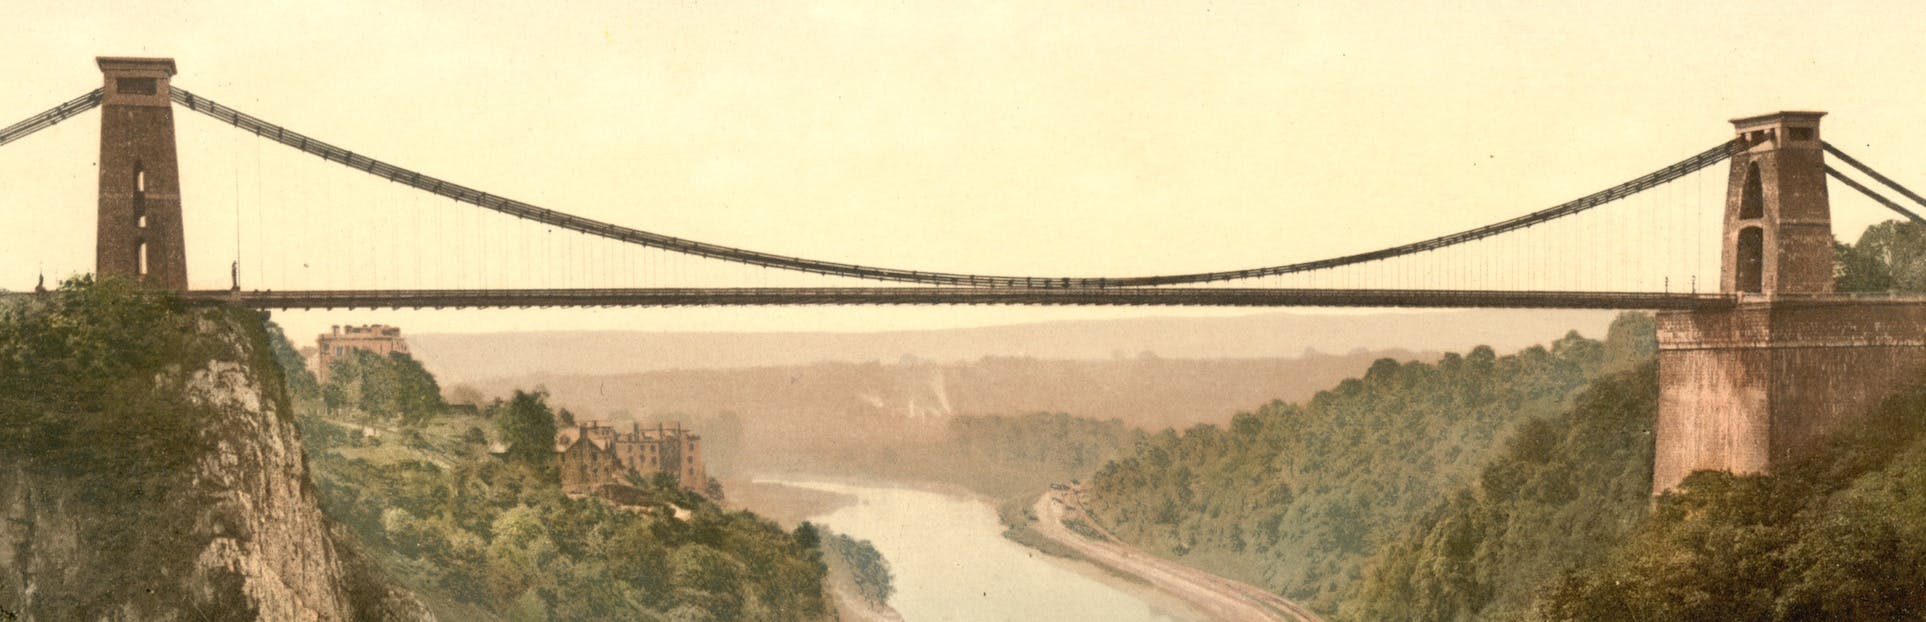 Entdecken Sie Brunels Boot und Brücke auf einer selbst geführten Audiotour in Bristol